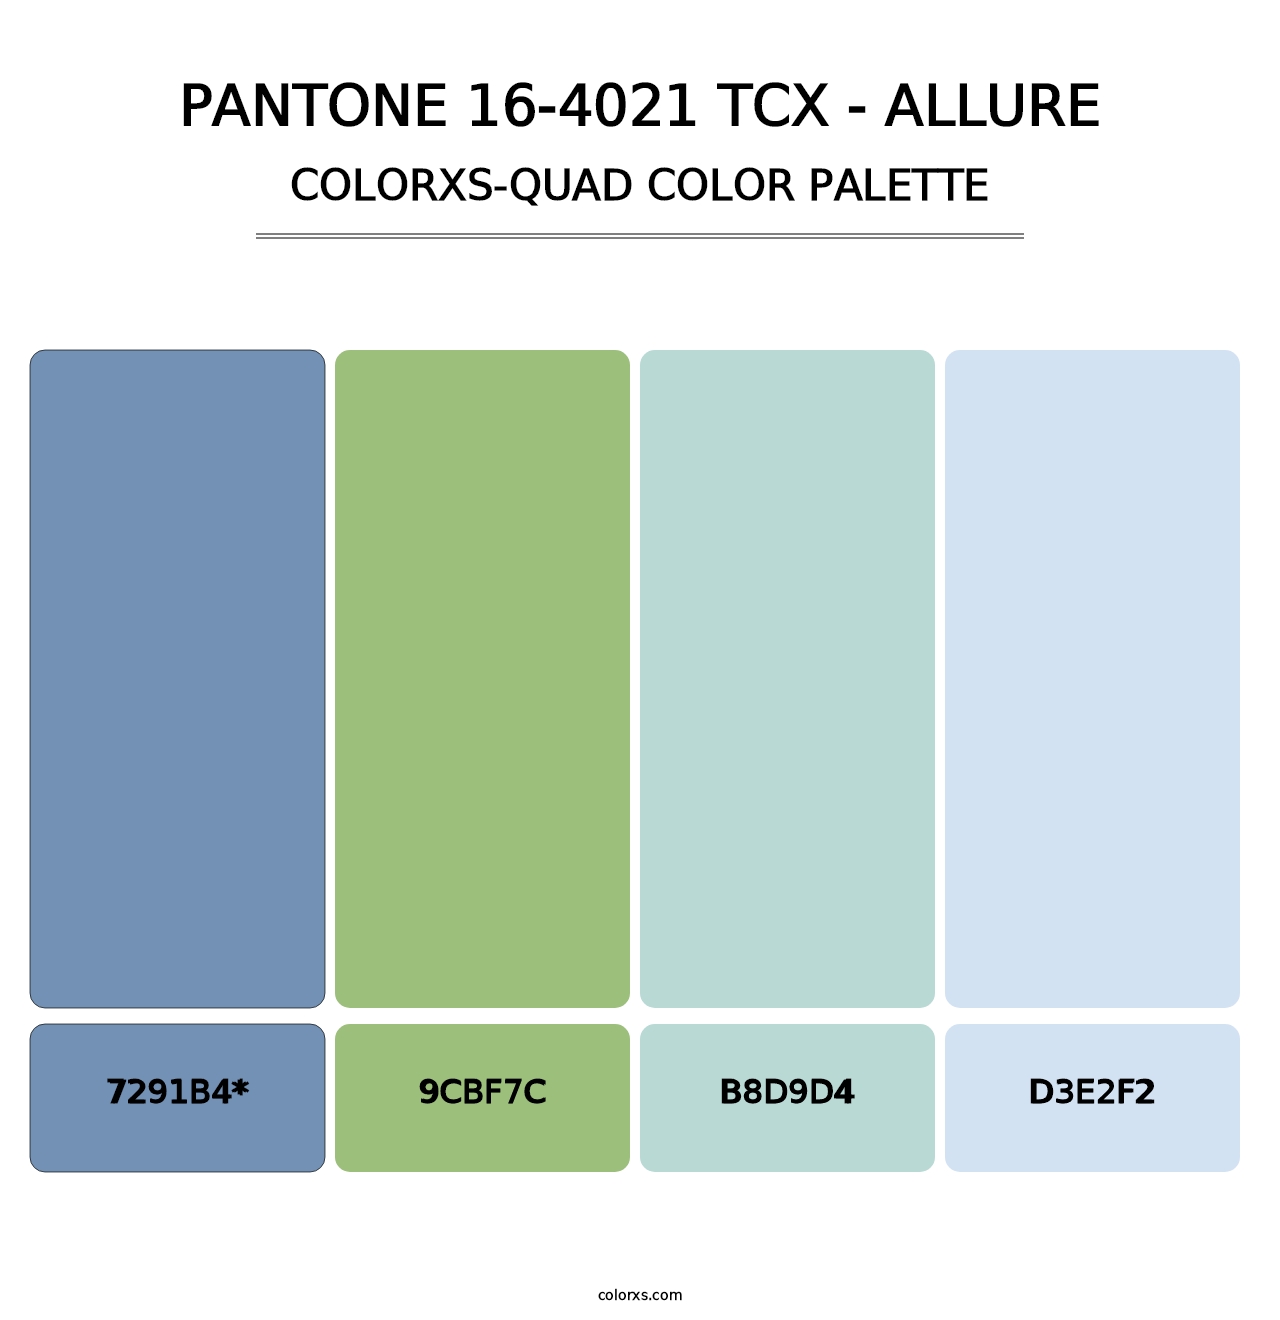 PANTONE 16-4021 TCX - Allure - Colorxs Quad Palette